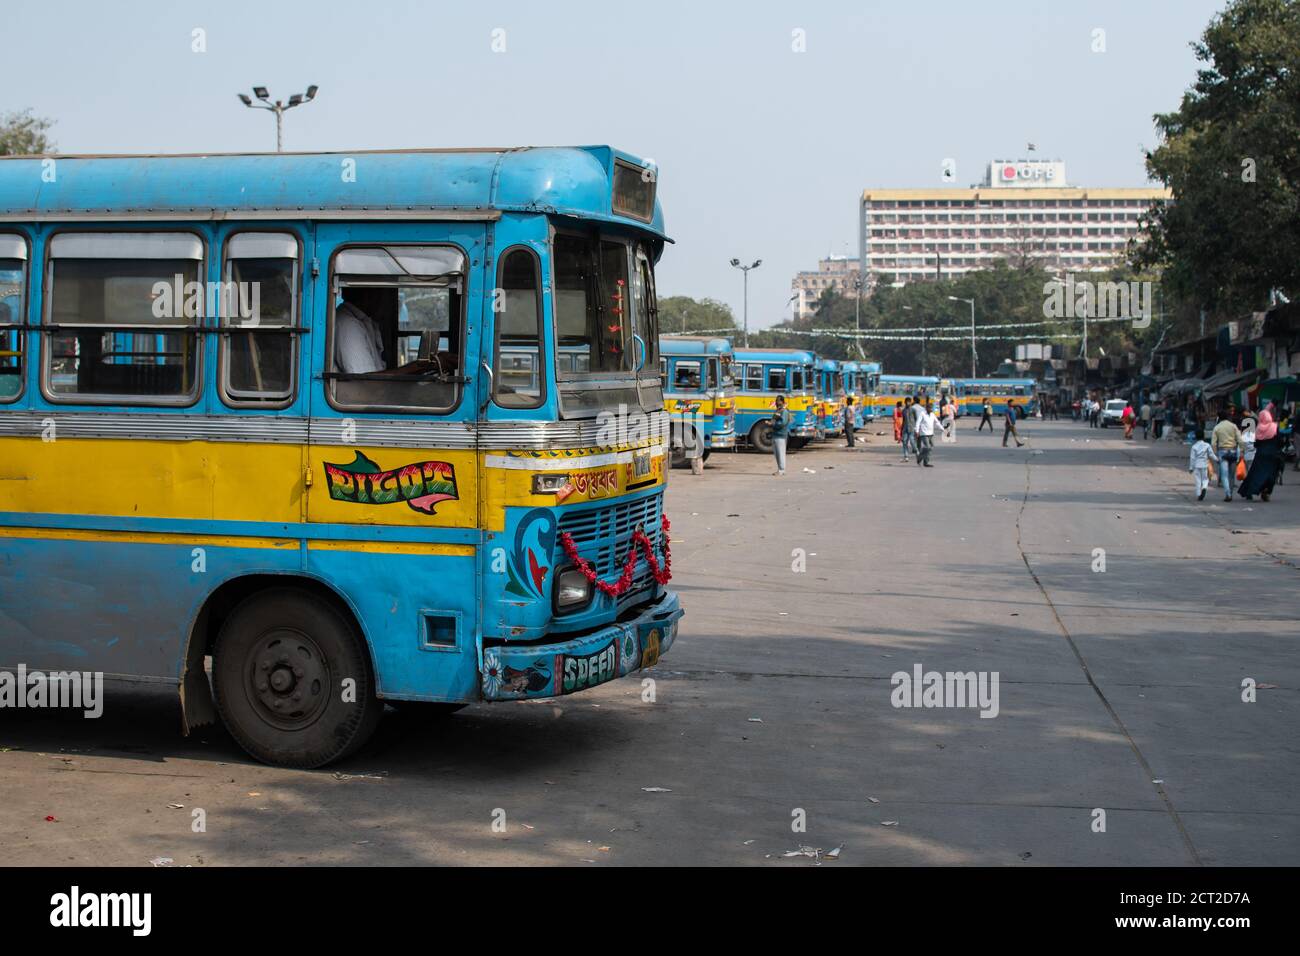 Kolkata, Indien - 1. Februar 2020: Mehrere unbekannte Menschen gehen an traditionellen türkis-gelben öffentlichen Bussen vorbei, die an einer Bushaltestelle parken Stockfoto